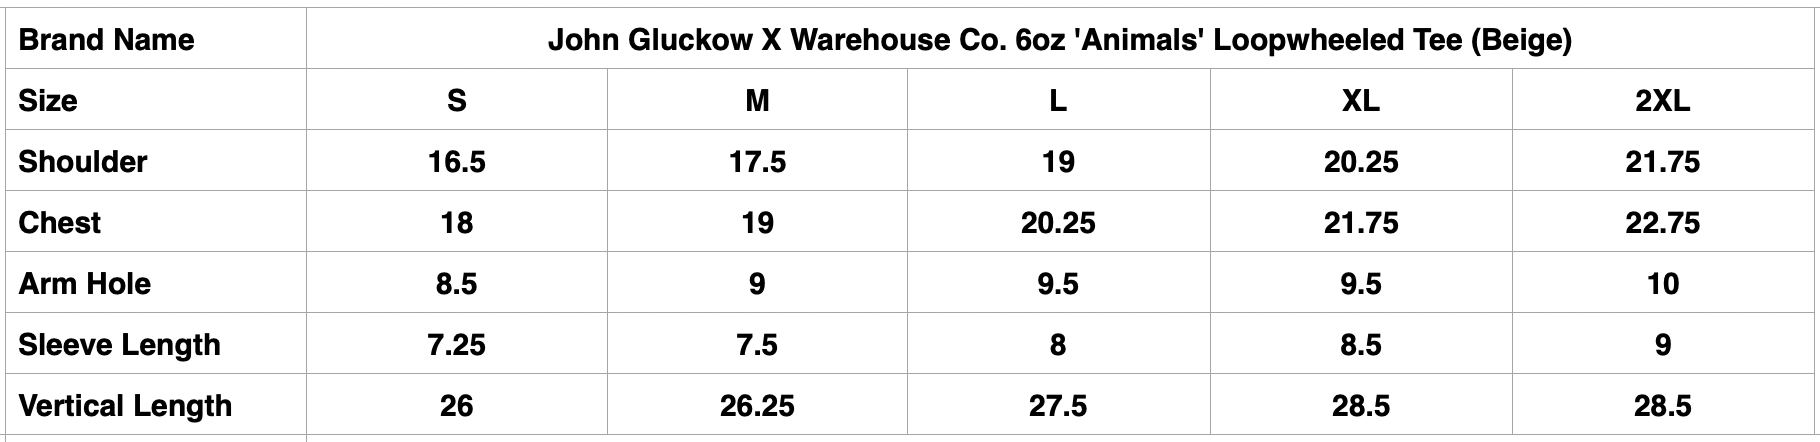 John Gluckow X Warehouse Co. 6oz 'Animals' Loopwheeled Tee (Beige)